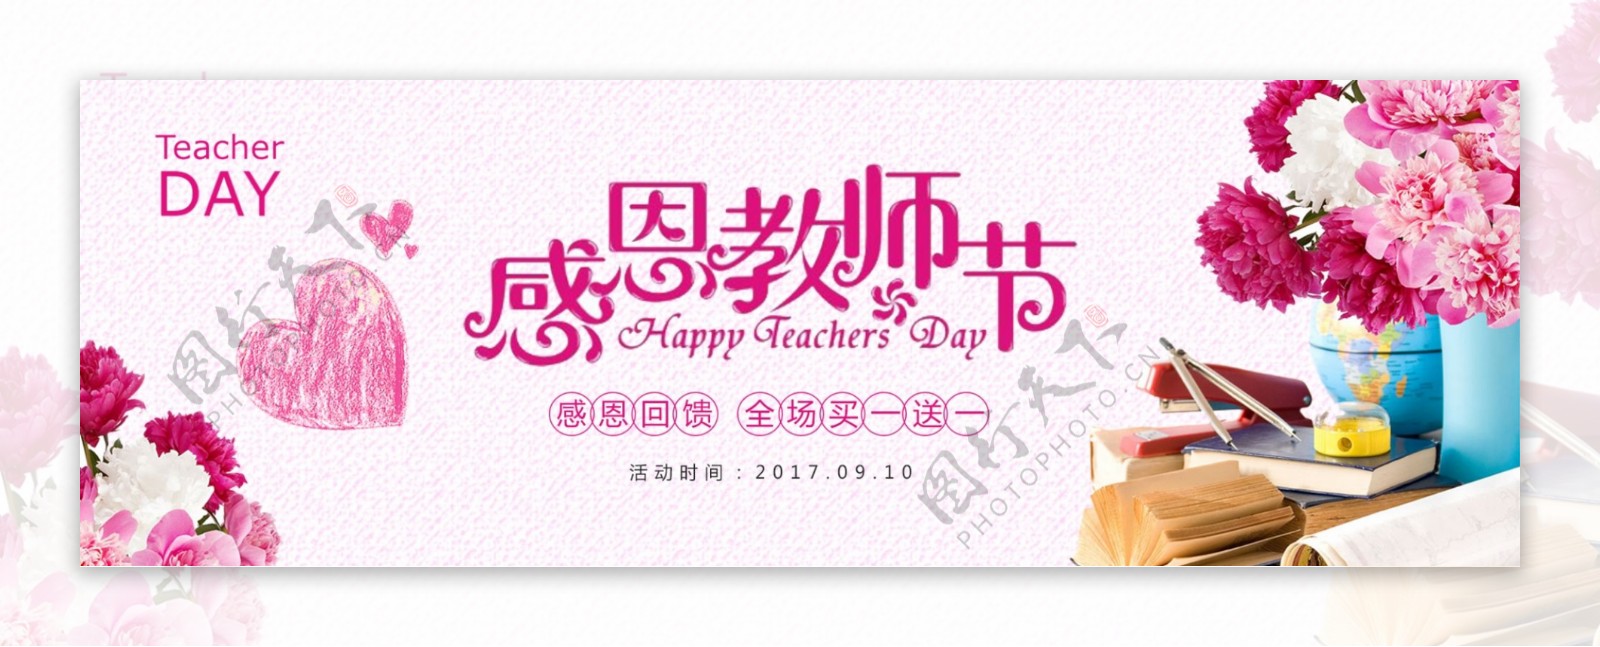 电商淘宝天猫感恩教师节促销海报banner教师节海报